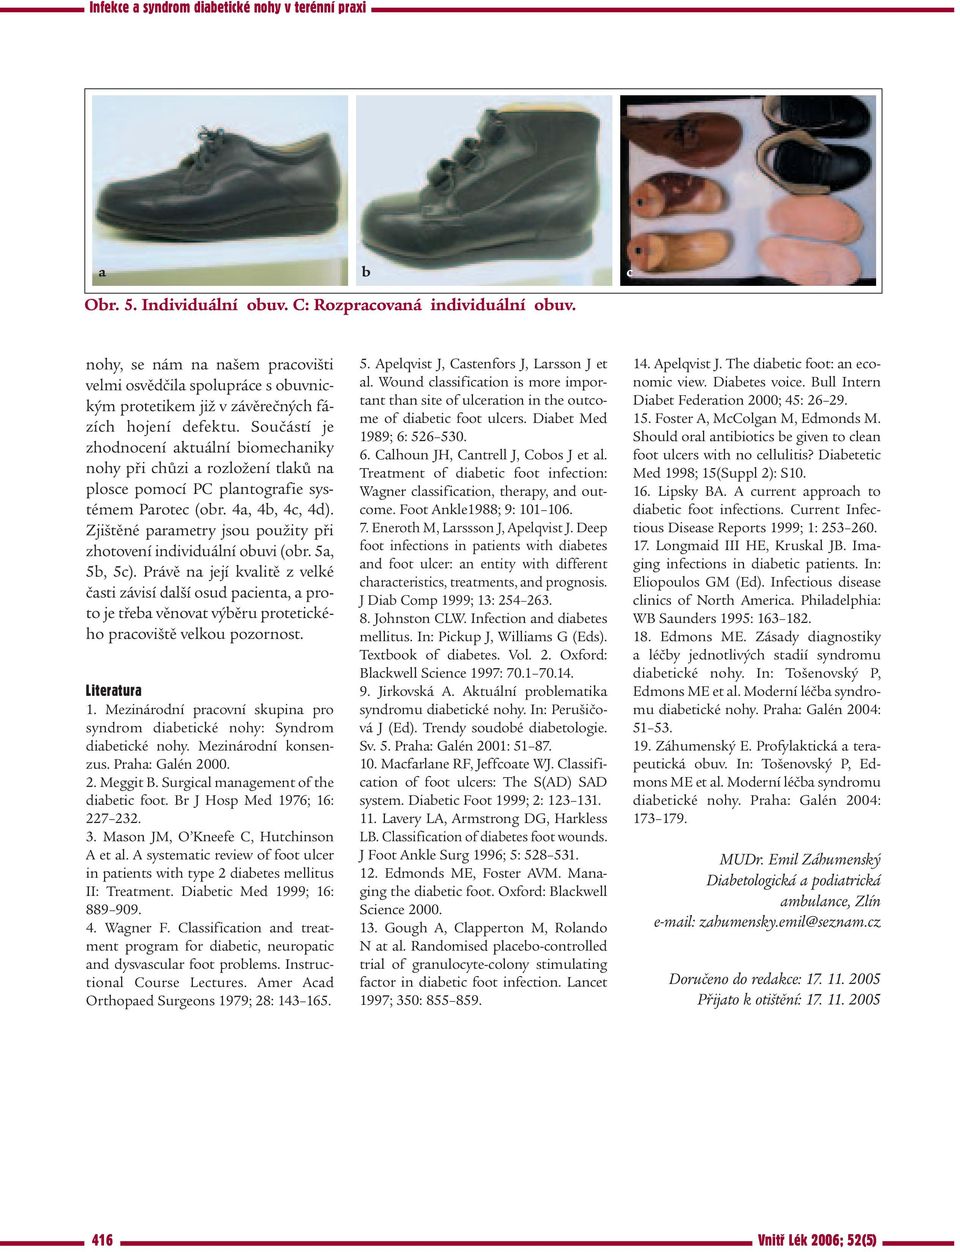 Zjištěné parametry jsou použity při zhotovení individuální obuvi (obr. 5a, 5b, 5c).